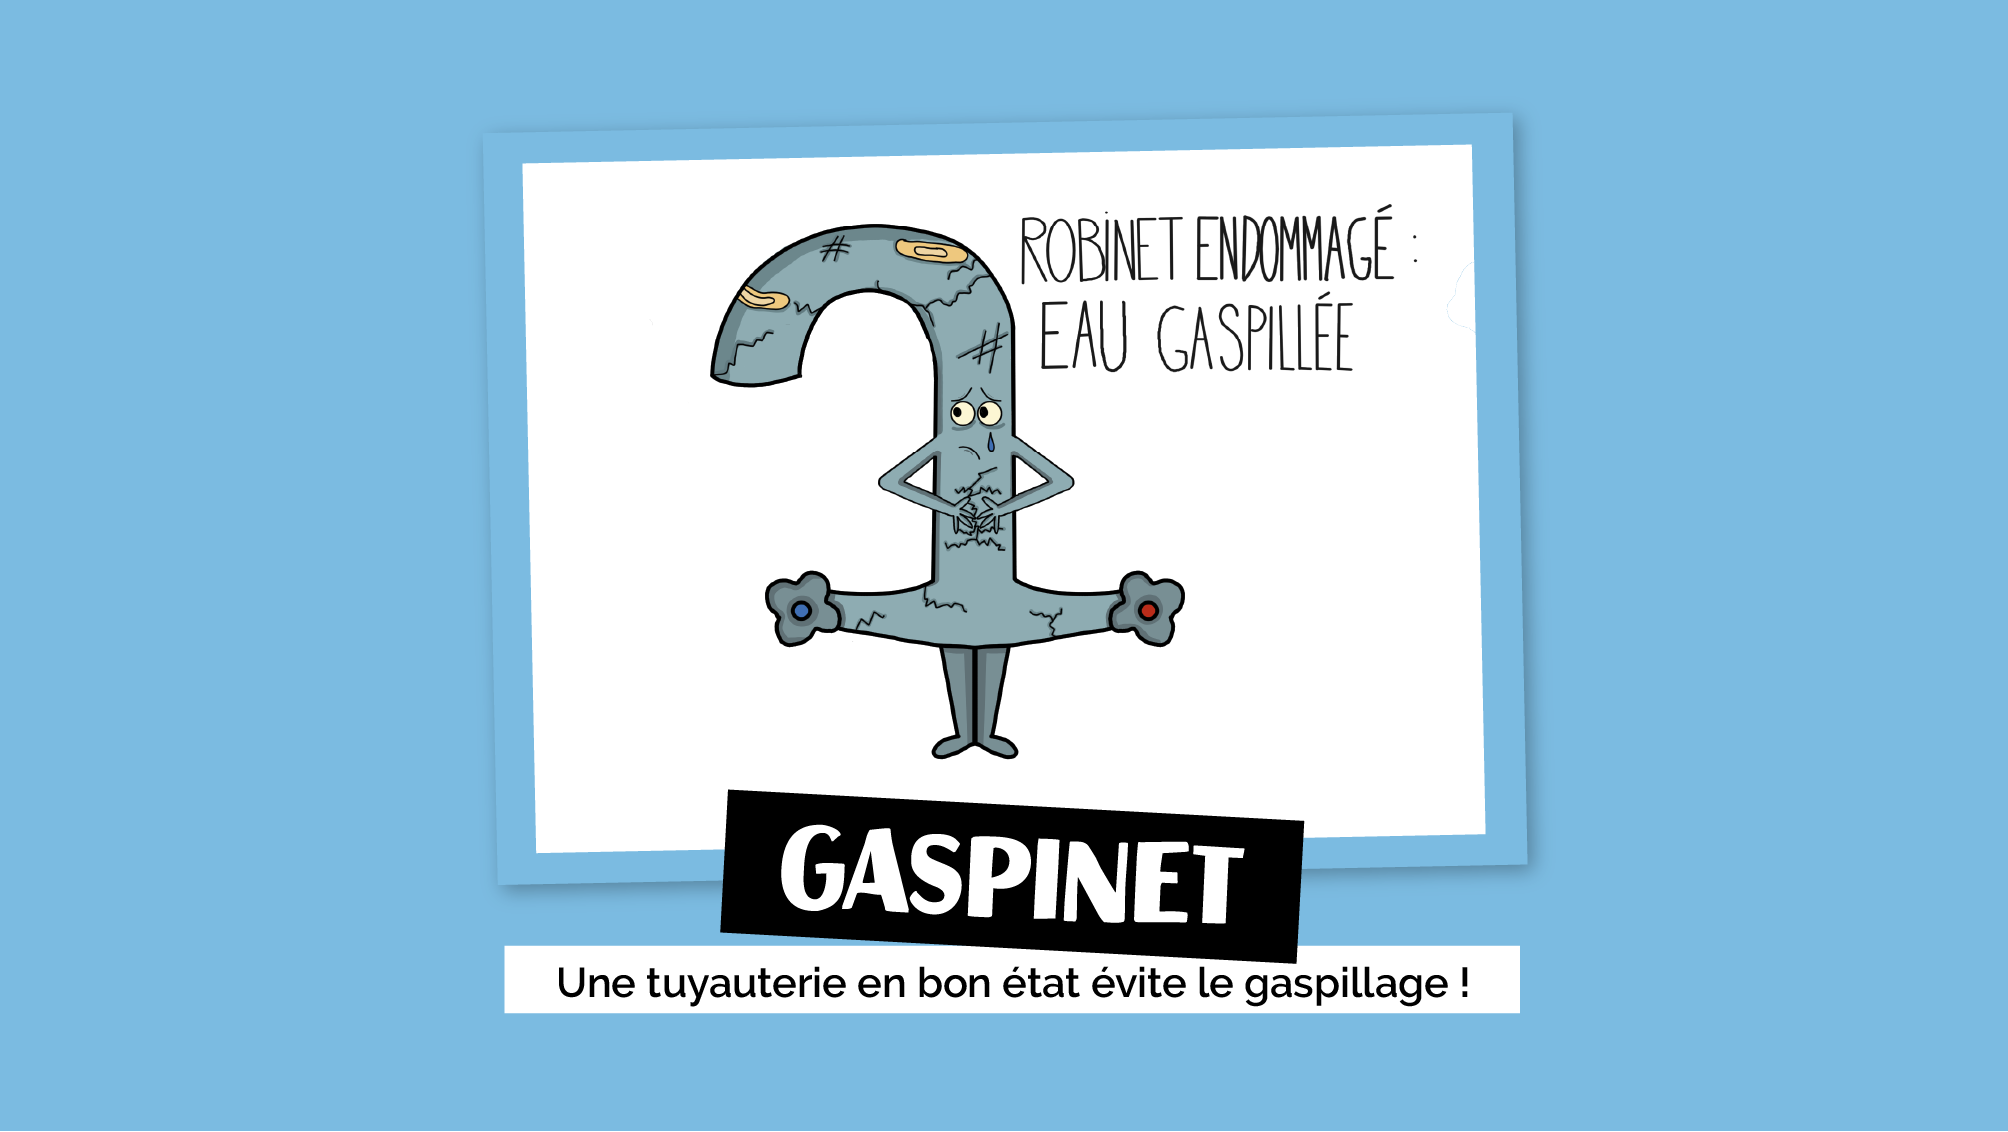 Gaspinet - Une tuyauterie en bon état évite le gaspillage !